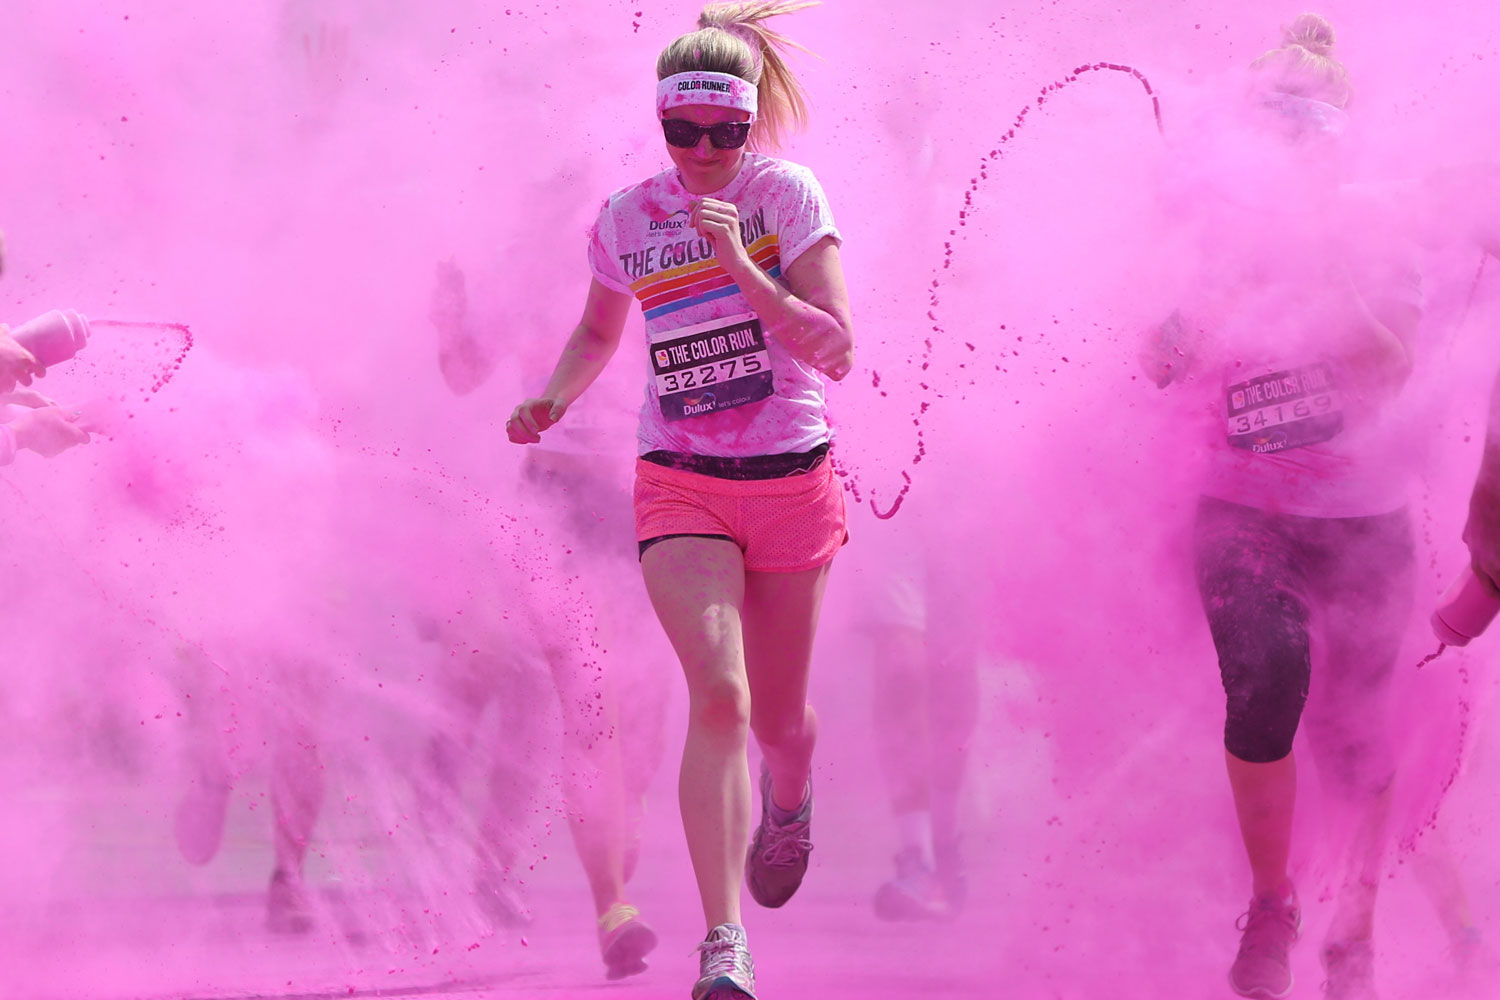 Londres acoge la Color Run, una carrera donde los atletas conquistan la meta a todo color